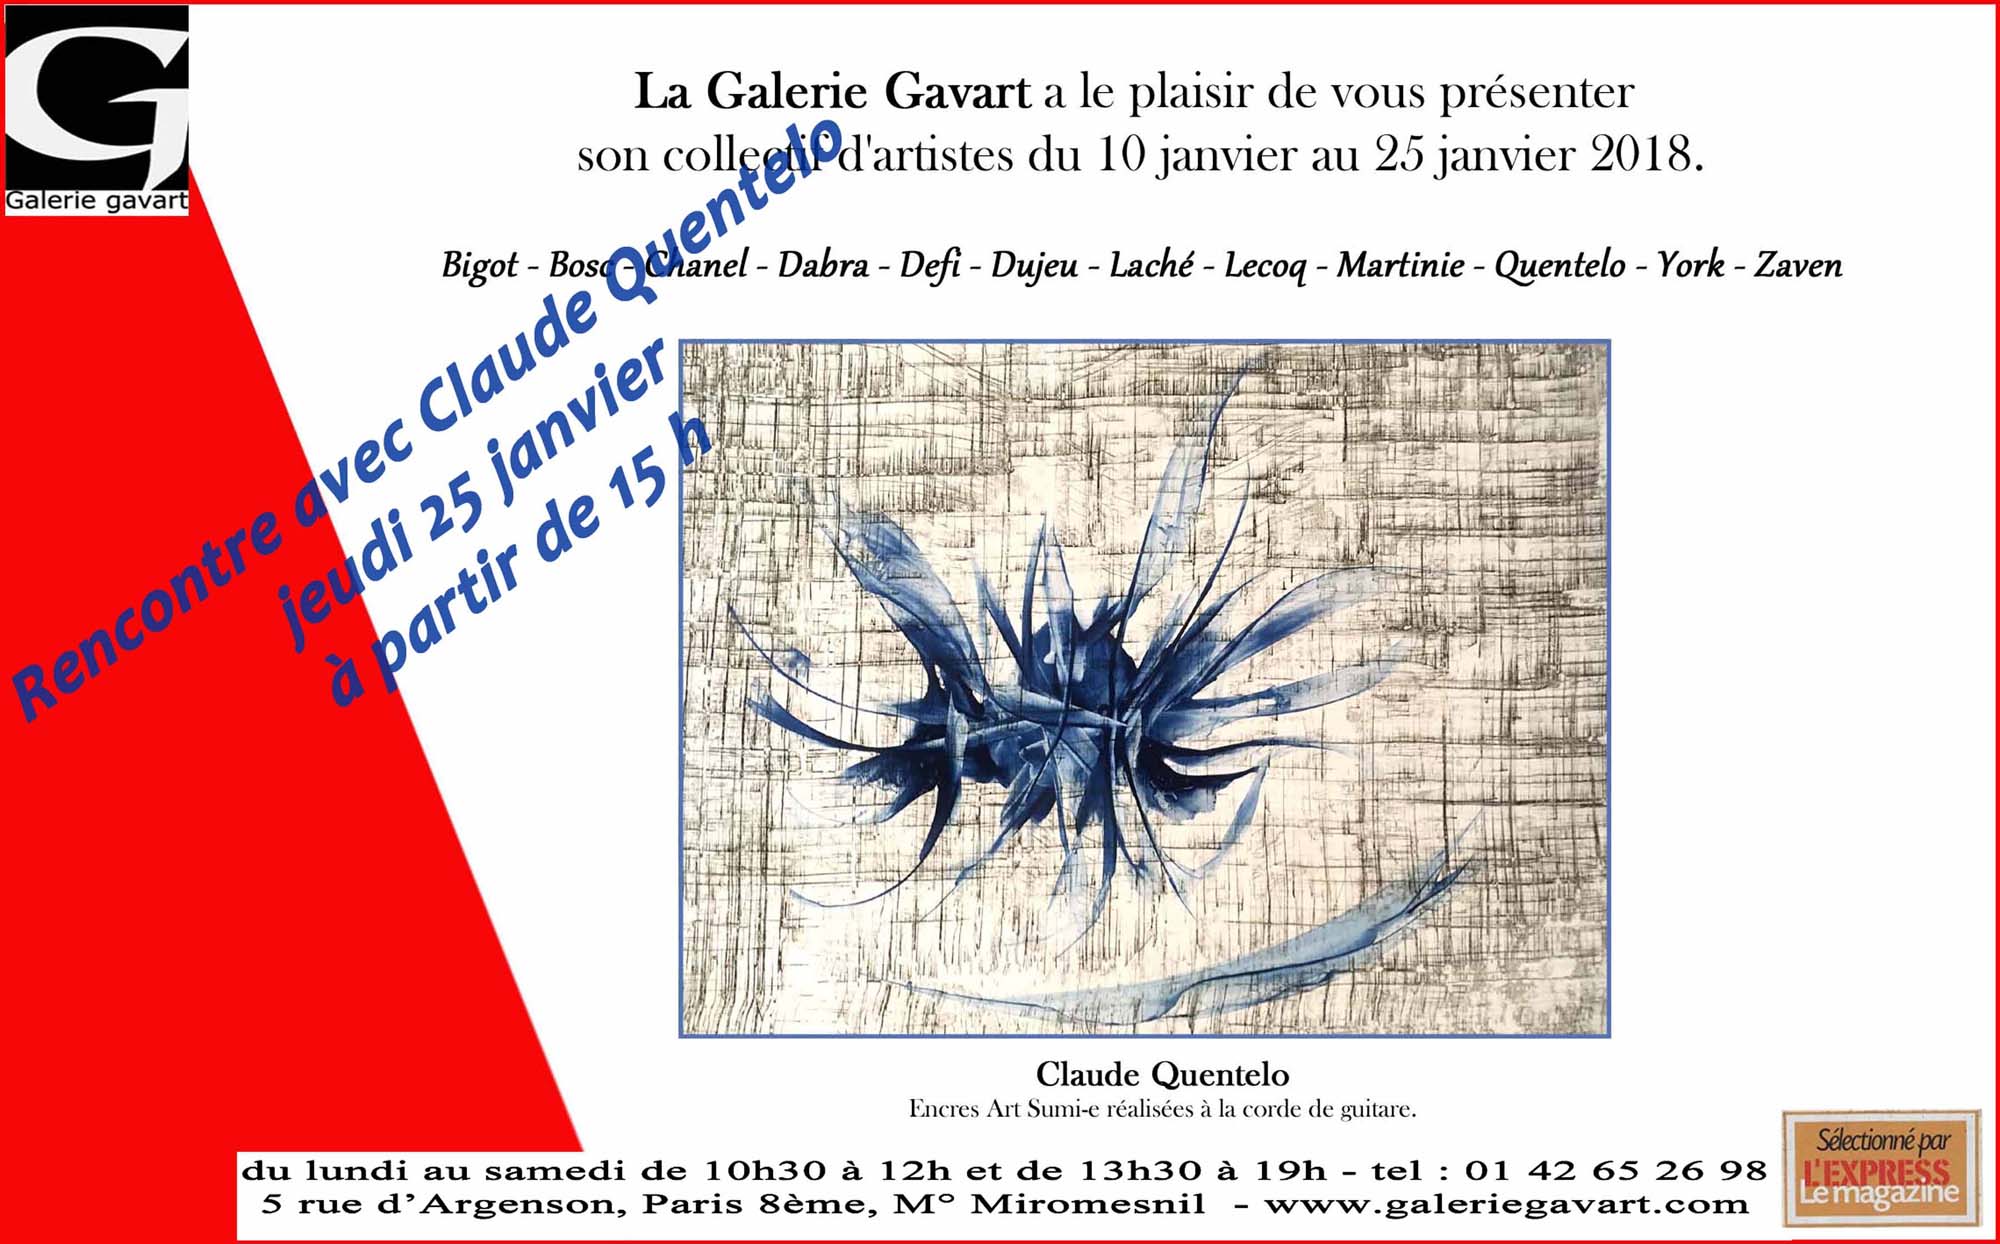 Rencontre à la Galerie Gavart avec Claude Quentelo 25 janvier 2018 à partir de 15 h.